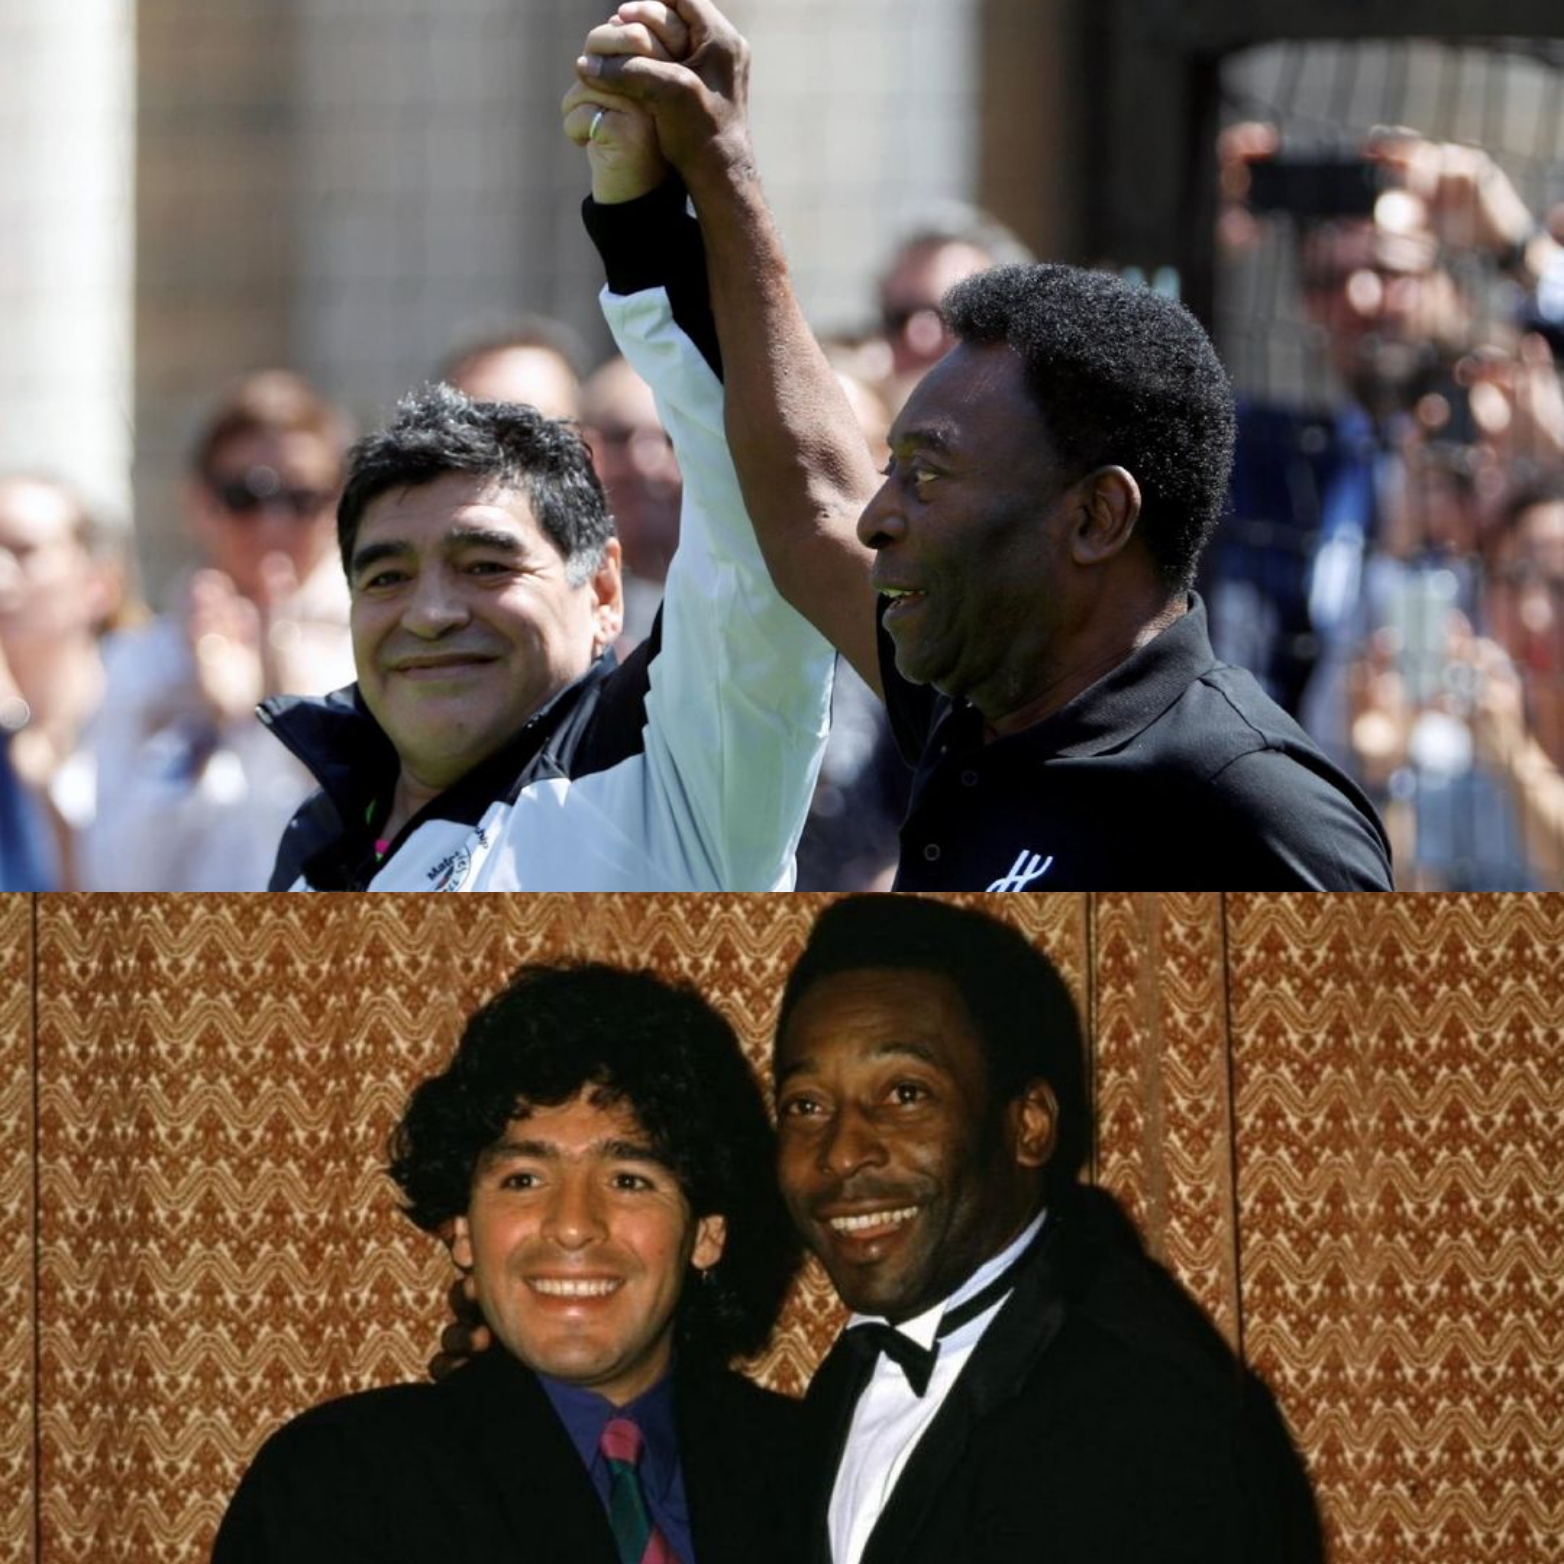 I love you, Diego' - Pele pens message for Maradona - SportsDesk